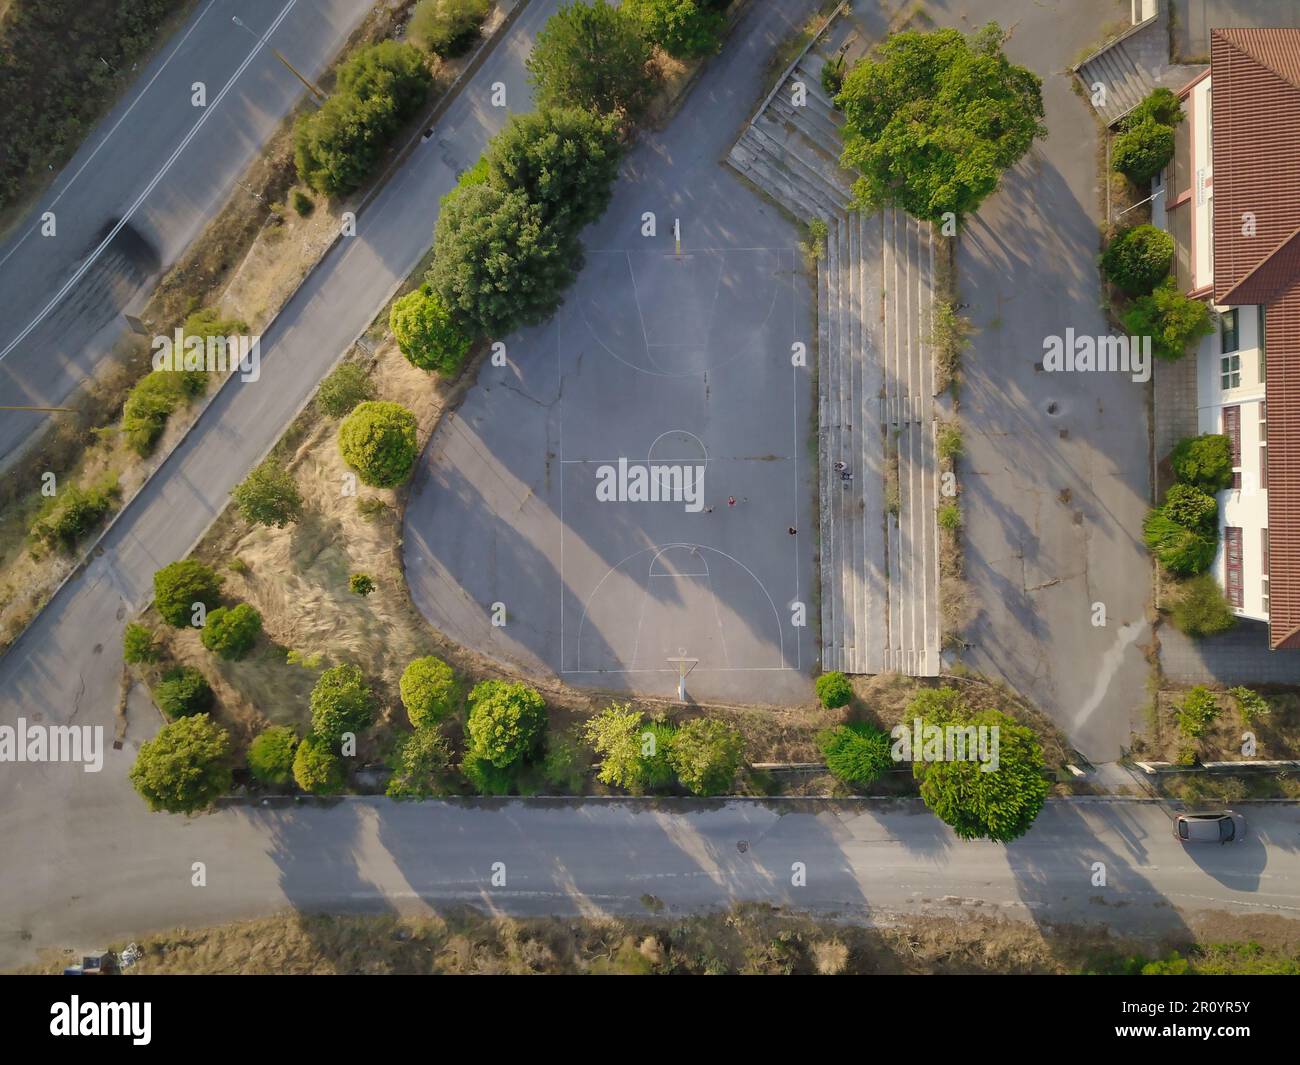 Vue aérienne d'un vaste parc de stationnement vide de la ville, avec des rangées de places de stationnement et une route sinueuse qui s'éloigne du parc Banque D'Images